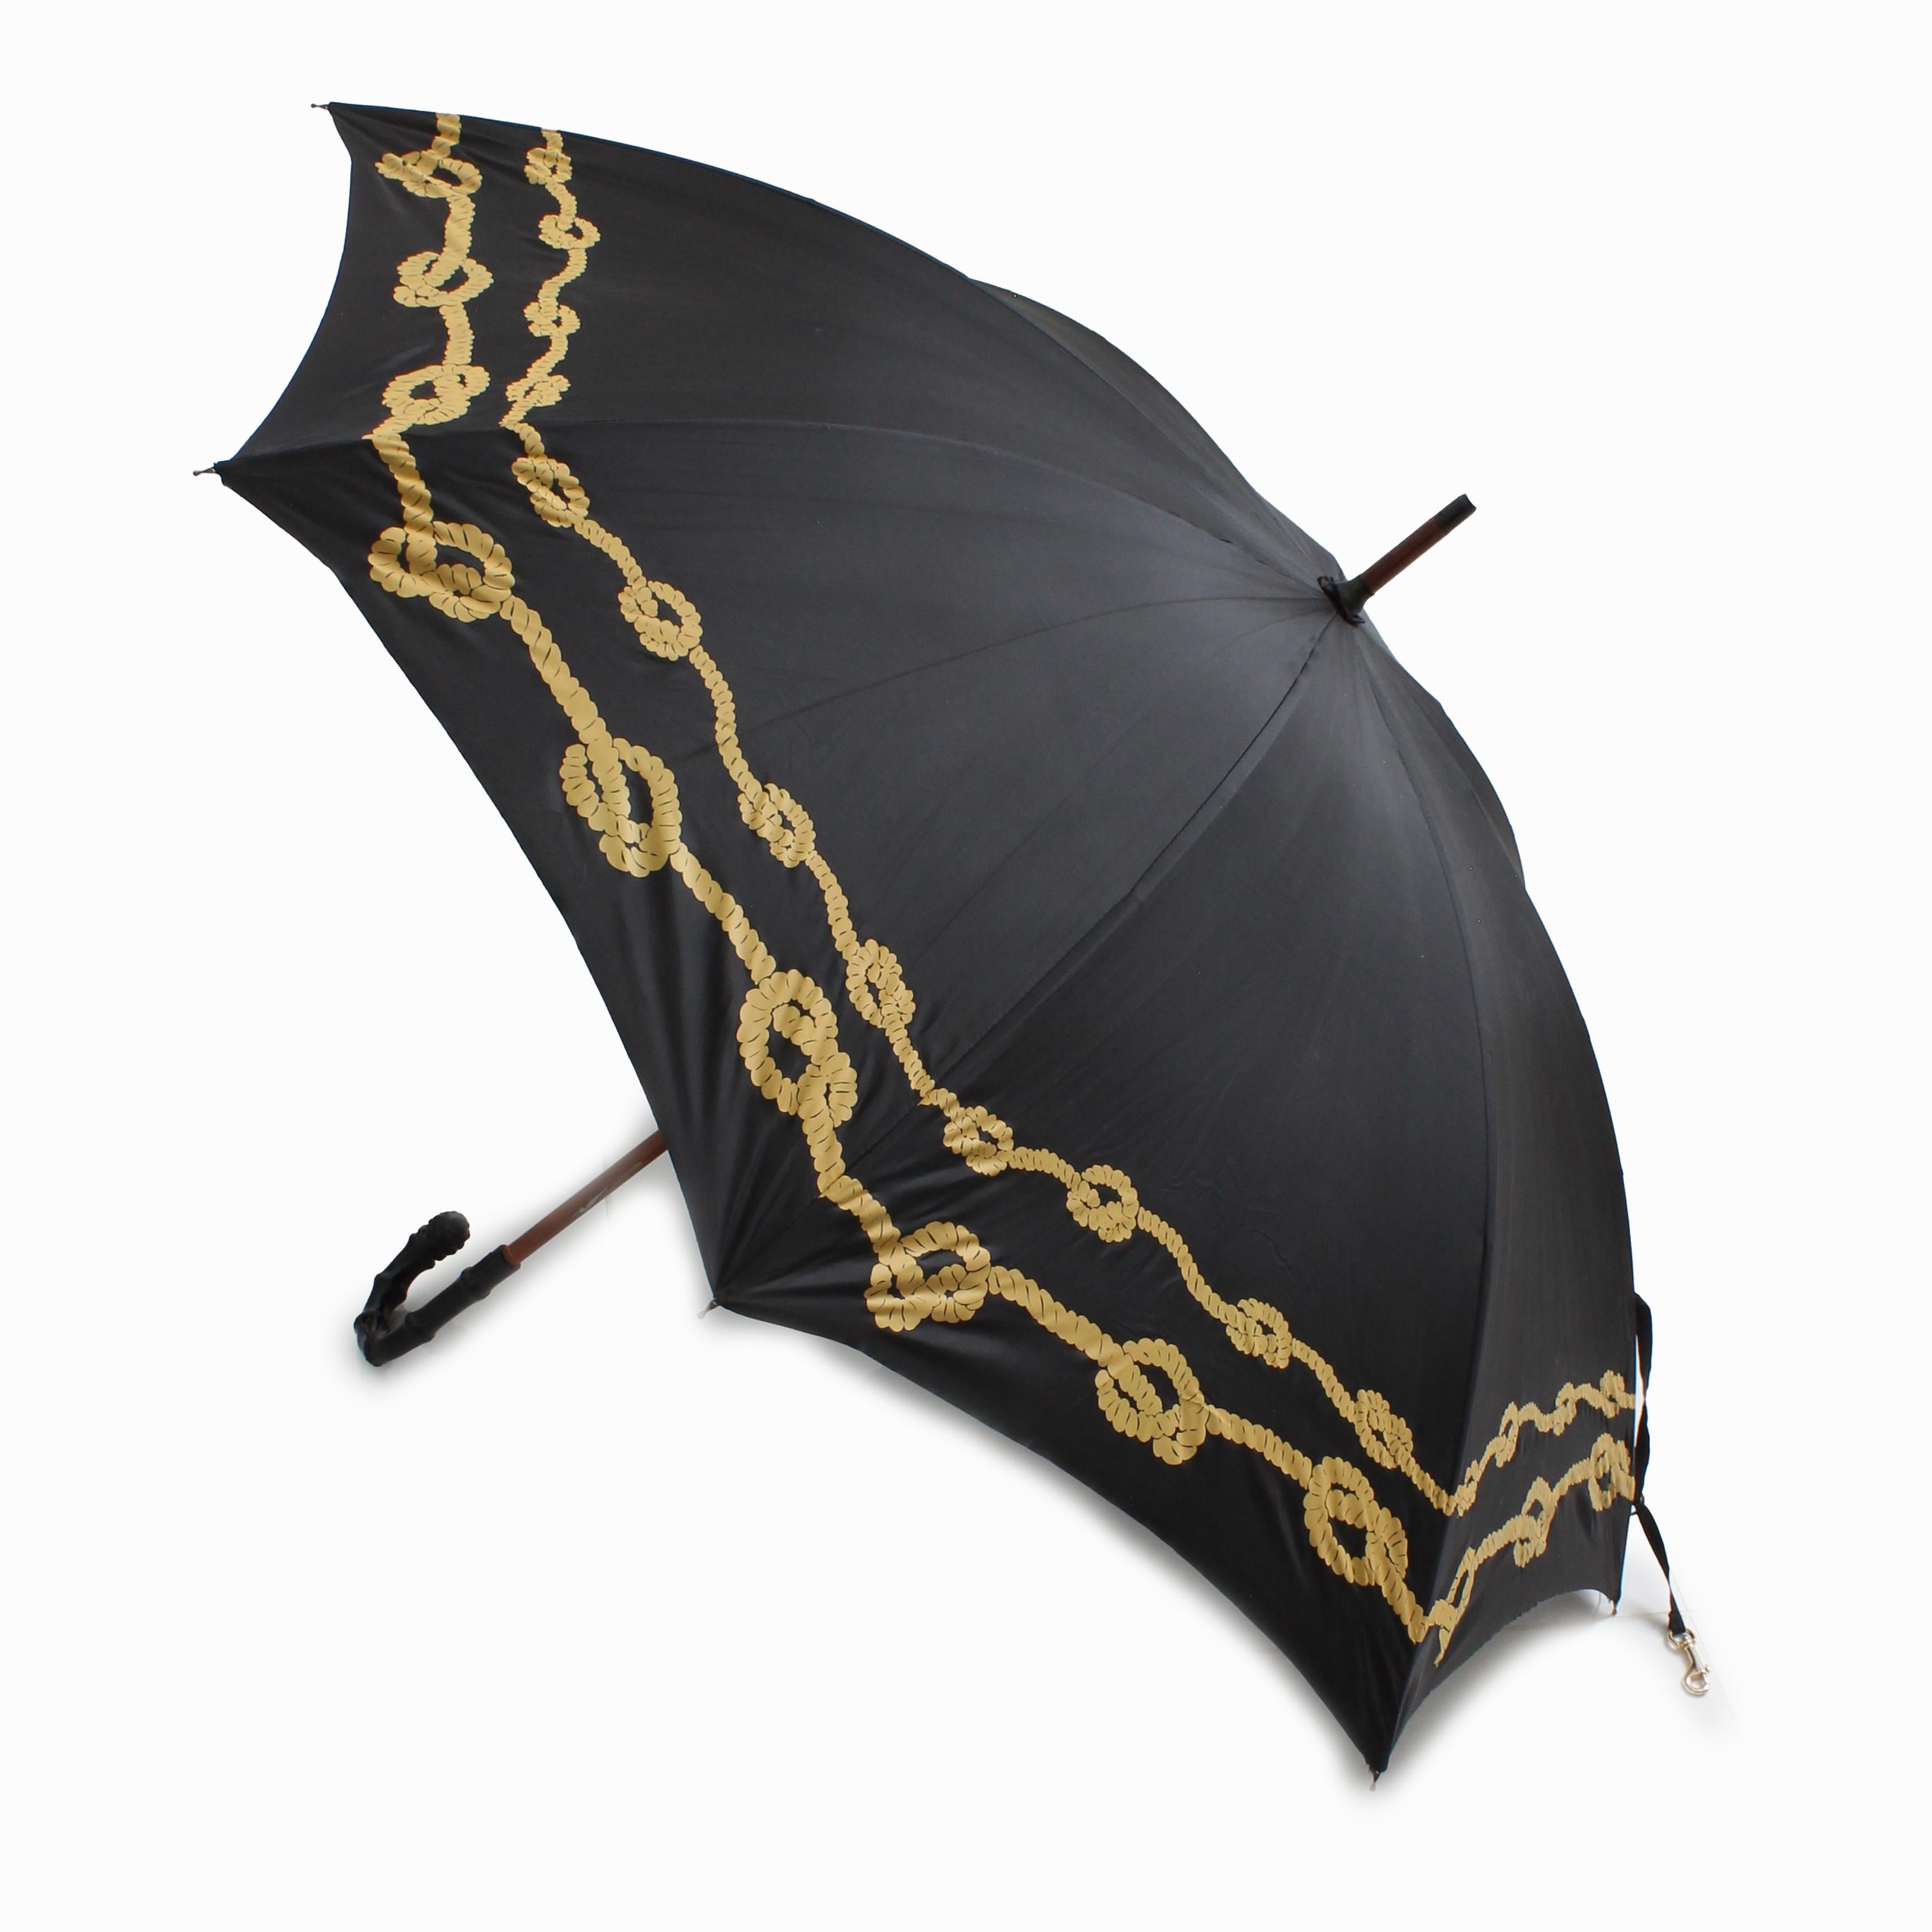 Grand parapluie vintage Bonnie Cashin pour D. Klein New York, d'occasion, probablement fabriqué dans les années 70.  Fabriqué en nylon noir avec un motif de corde dorée nouée, il est doté d'une poignée noire sculptée, d'un manche en bois et d'une